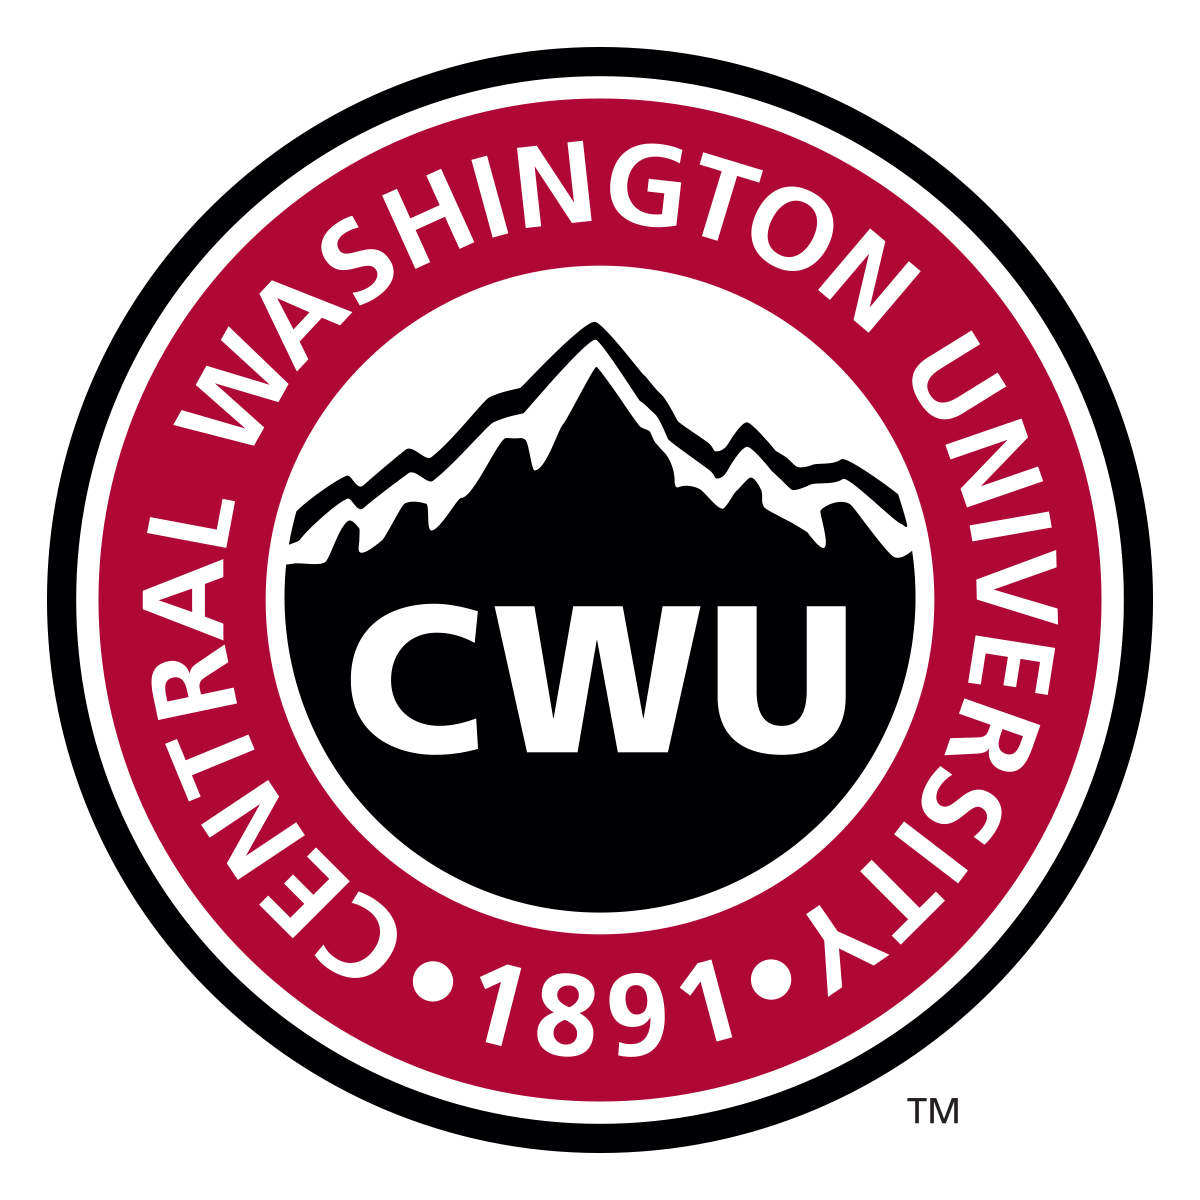 Central Washington University, United States of America